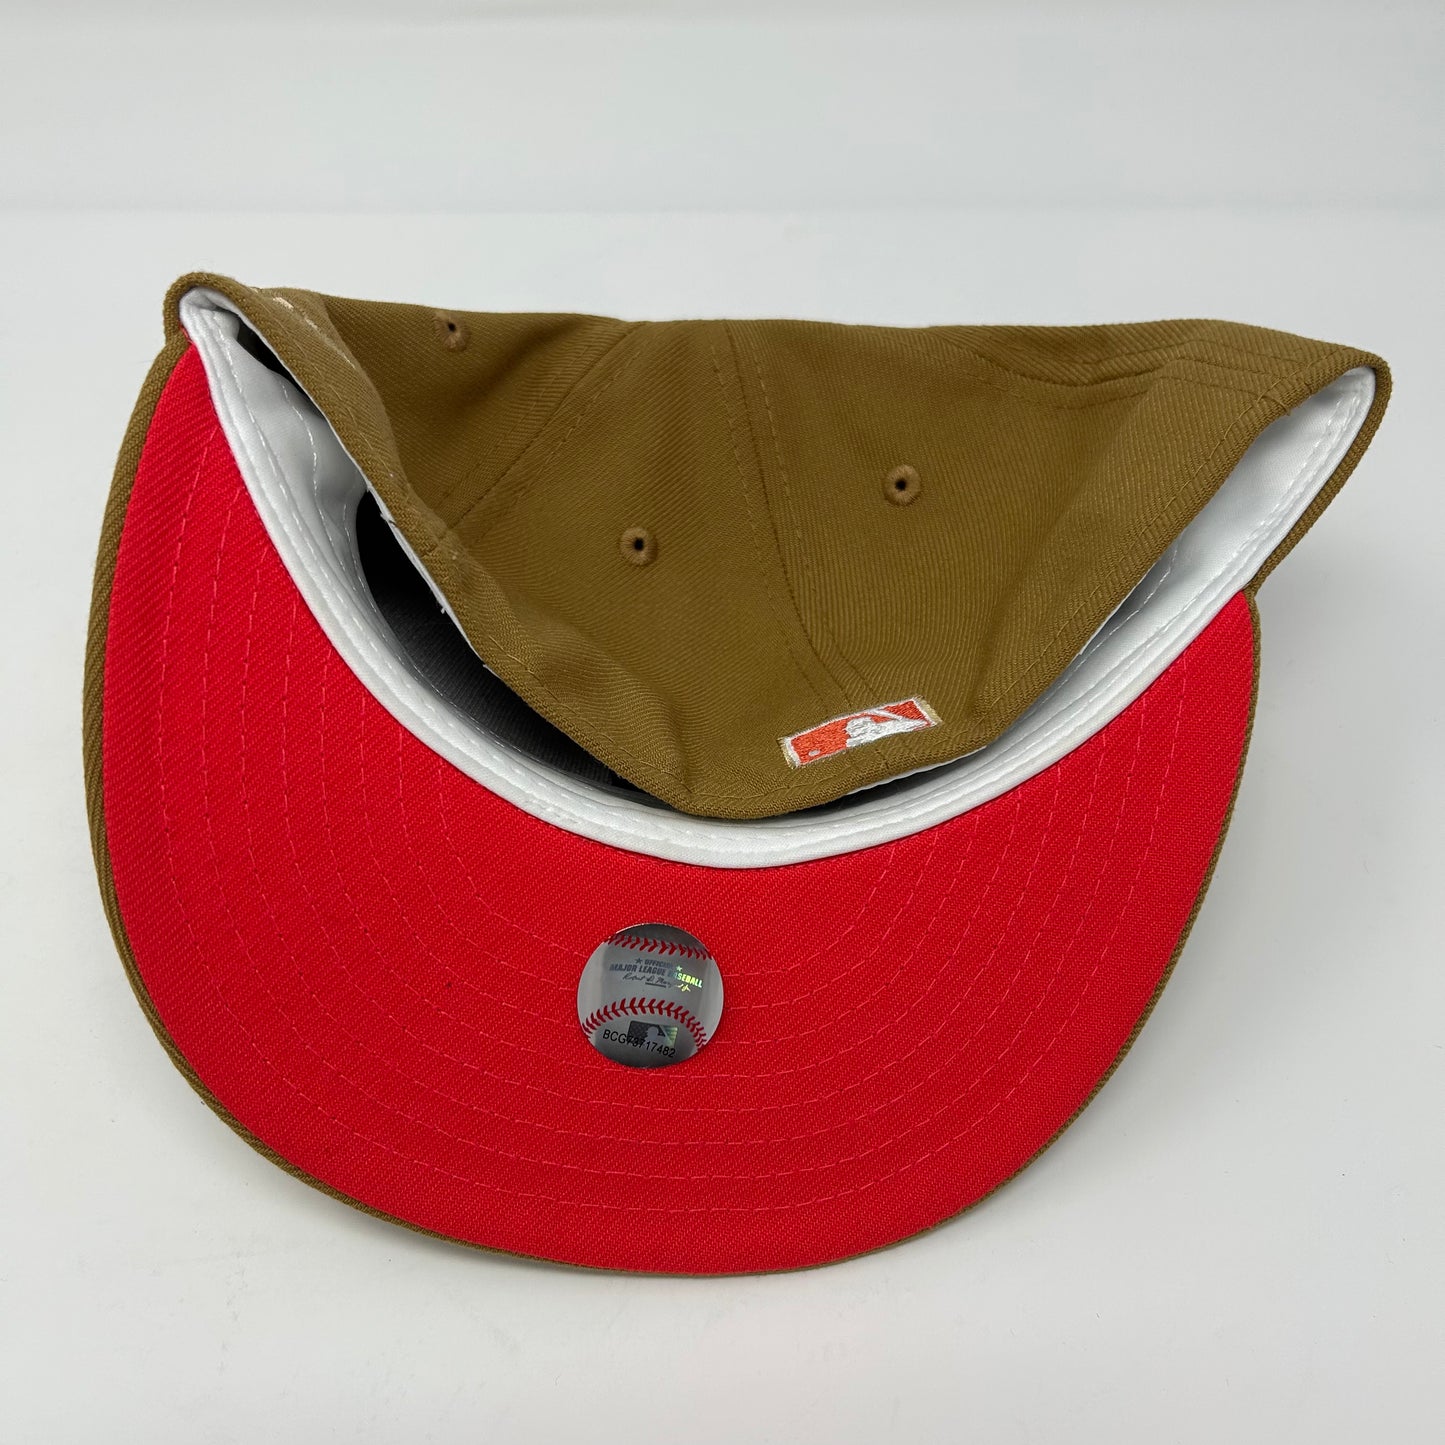 Houston Astros “Khaki” Hat